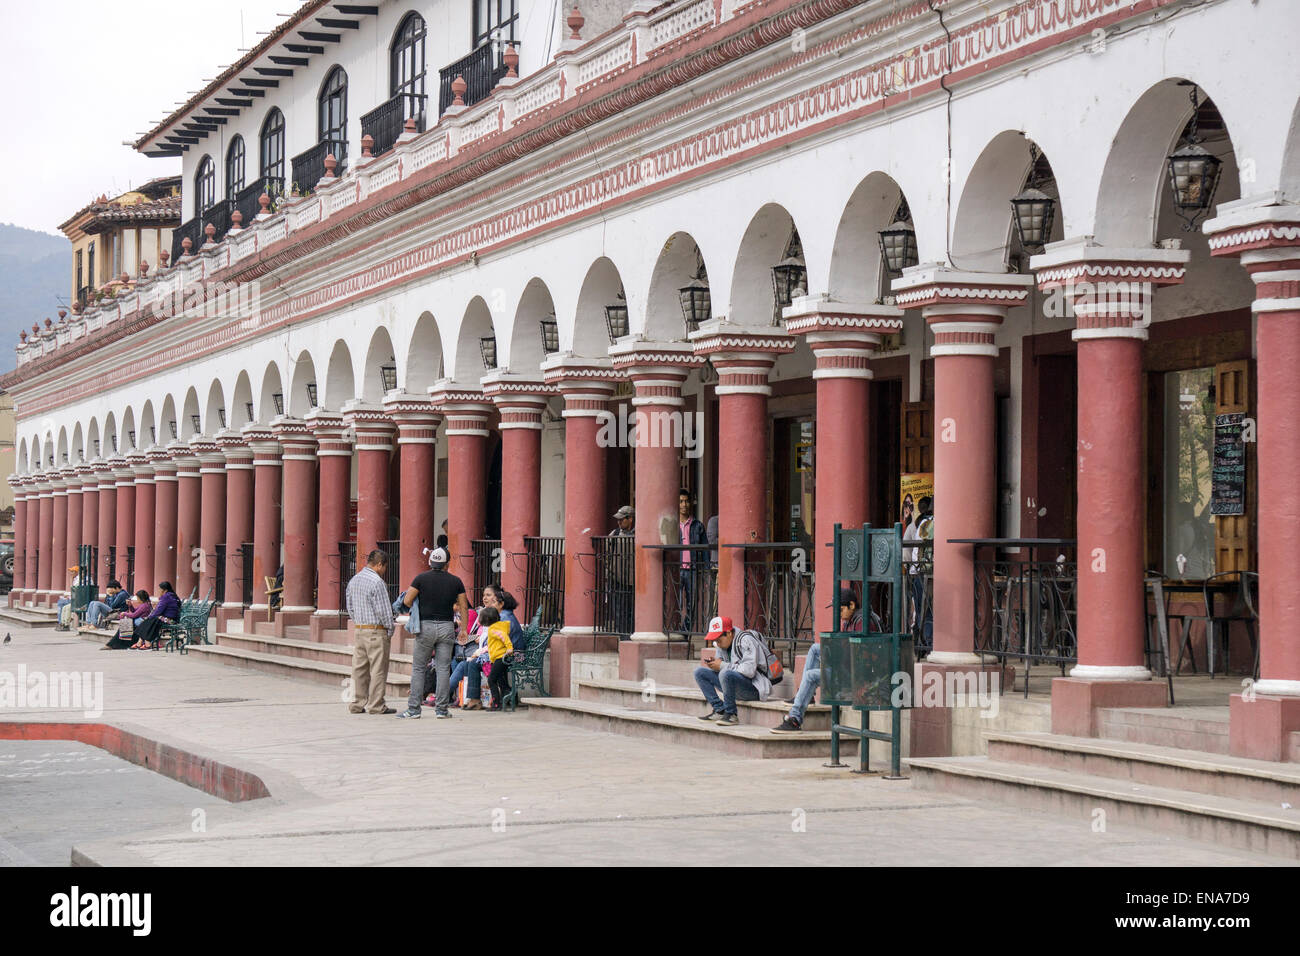 Les habitants de socialiser le long de l'empire colonial espagnol en face d'arcade abritant boutiques et cafés Zocalo San Cristobal de las Casas, Chiapas Banque D'Images